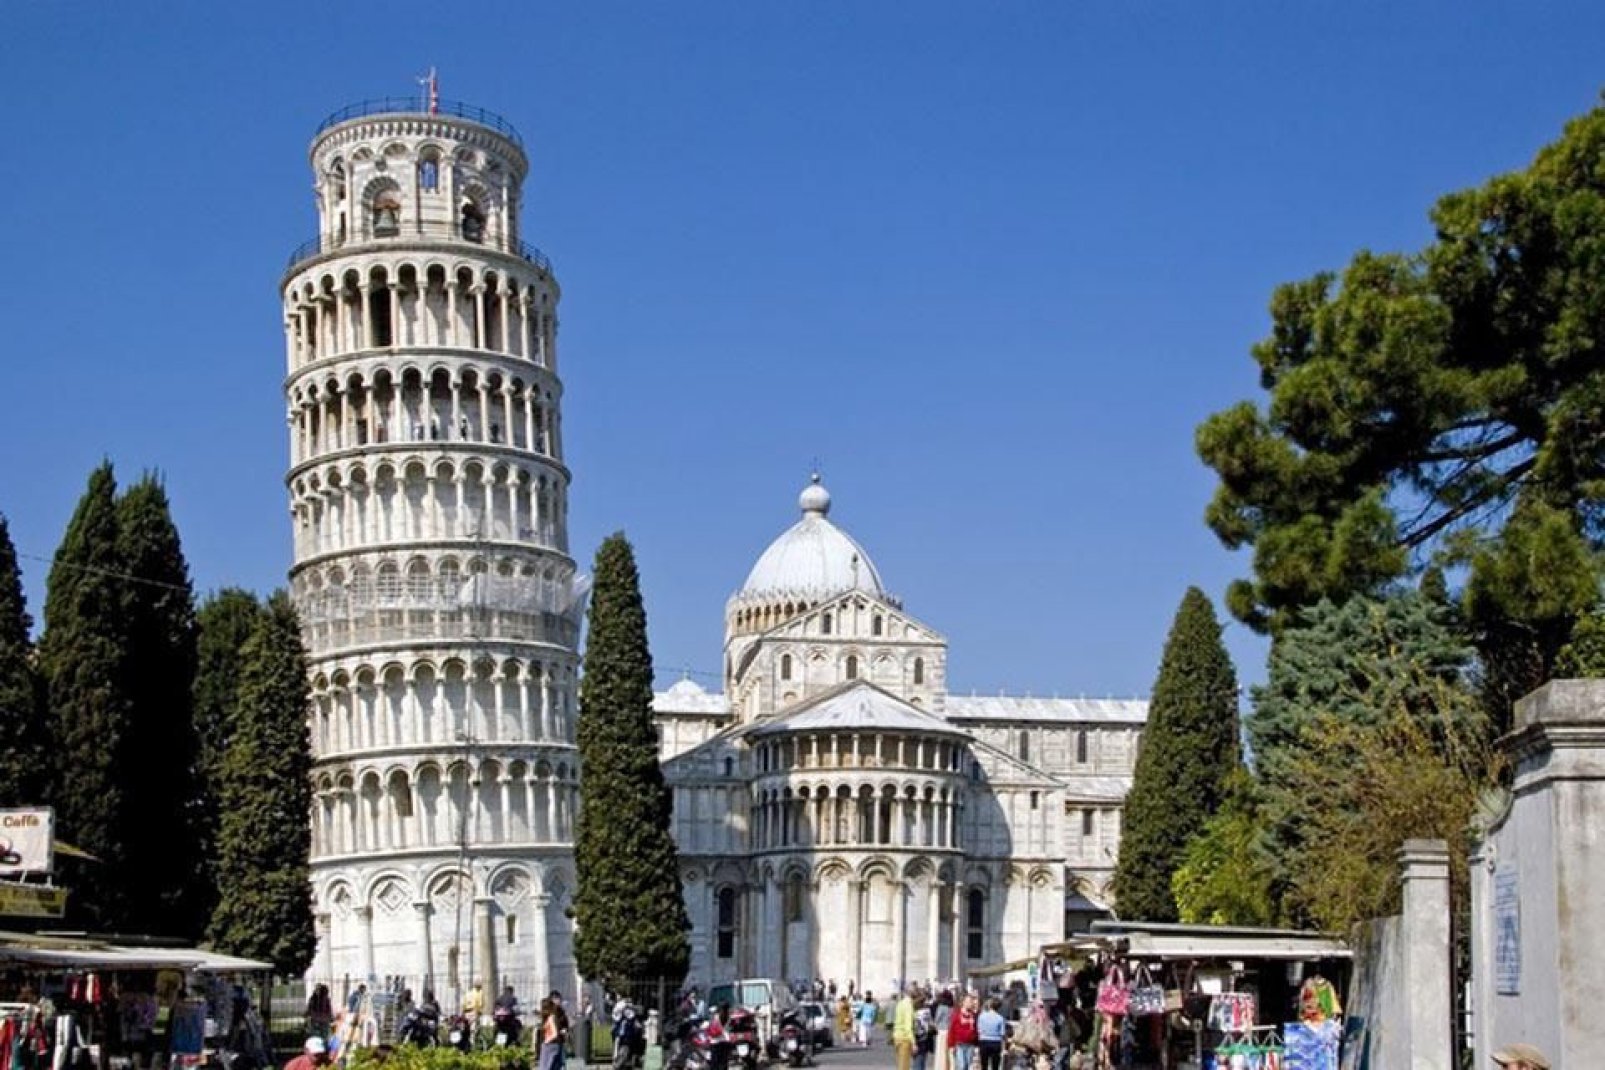 Il complesso architettonico di Piazza dei miracoli è il centro artistico più importante di Pisa, dichiarato patrimonio dell'Umanità dall'Unesco